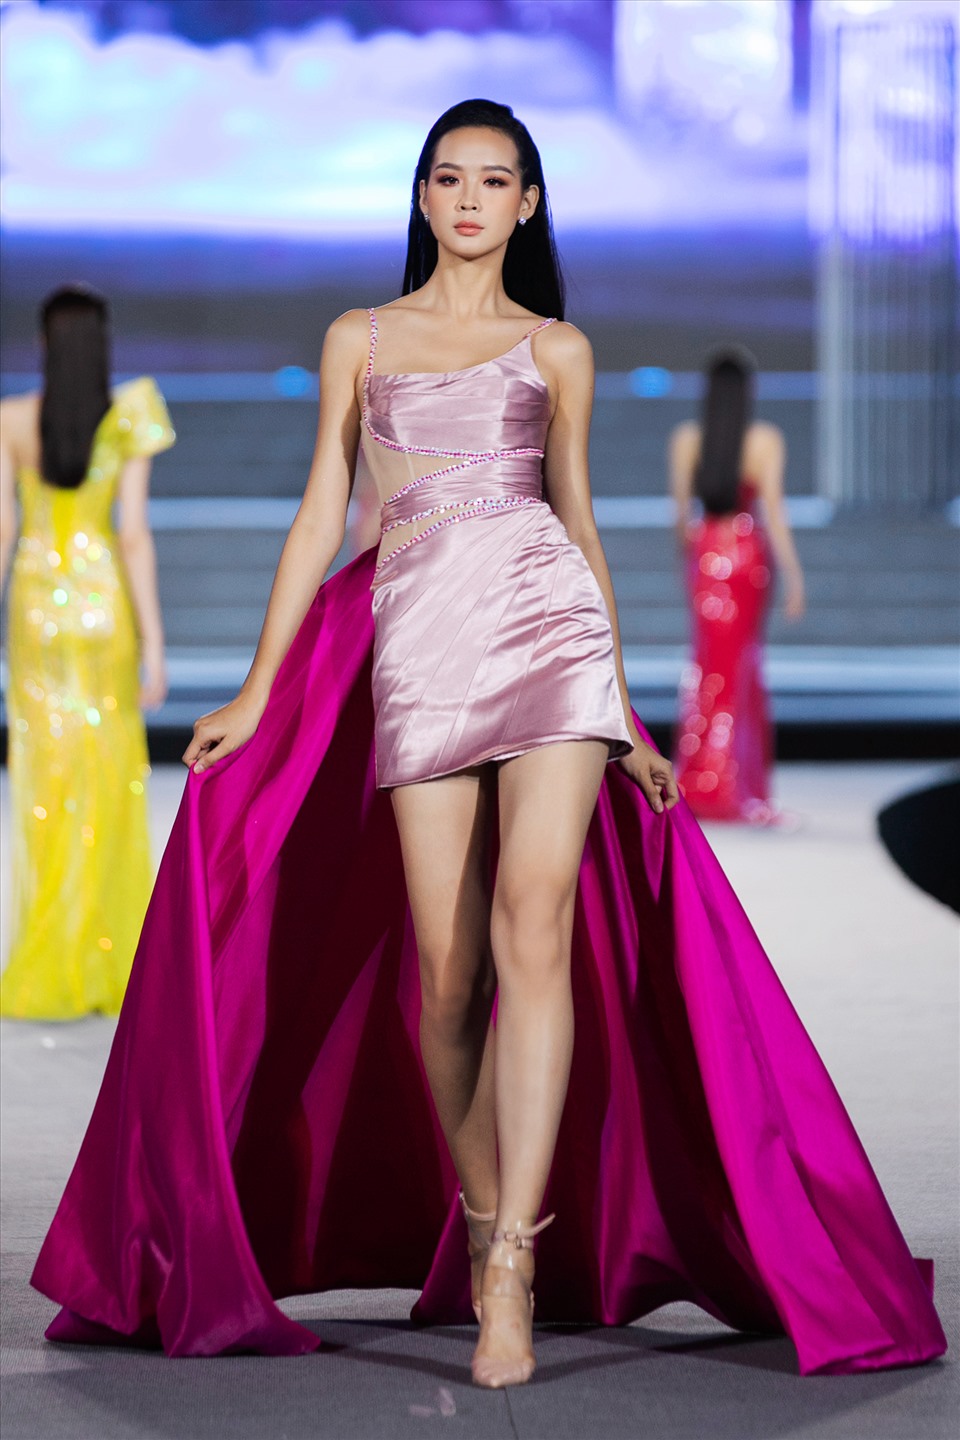 Sau 2 đêm trình diễn tại VietNam Beauty fashion fest, 64 thí sinh của Miss World Việt Nam đã thể hiện mình trước BGK và khán giả. Các thí sinh đã có cơ hội làm quen cùng sàn runway, thể hiện thần thái trước camera và công chúng.